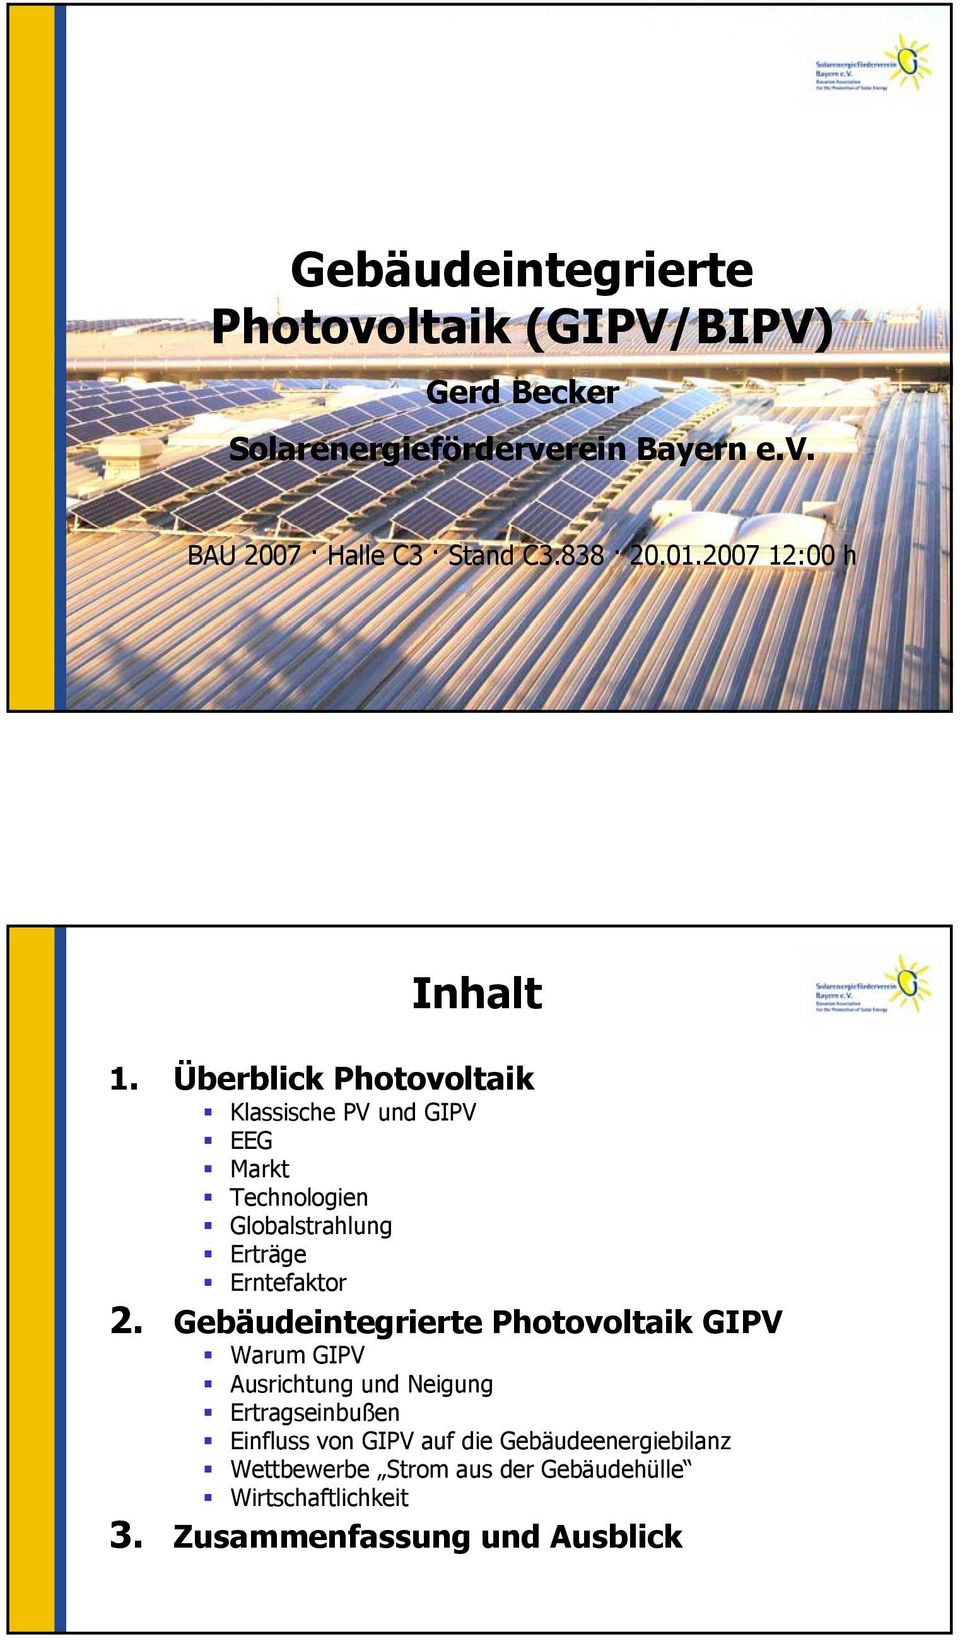 Überblick Photovoltaik Klassische PV und GIPV EEG Markt Technologien Globalstrahlung Erträge Erntefaktor 2.